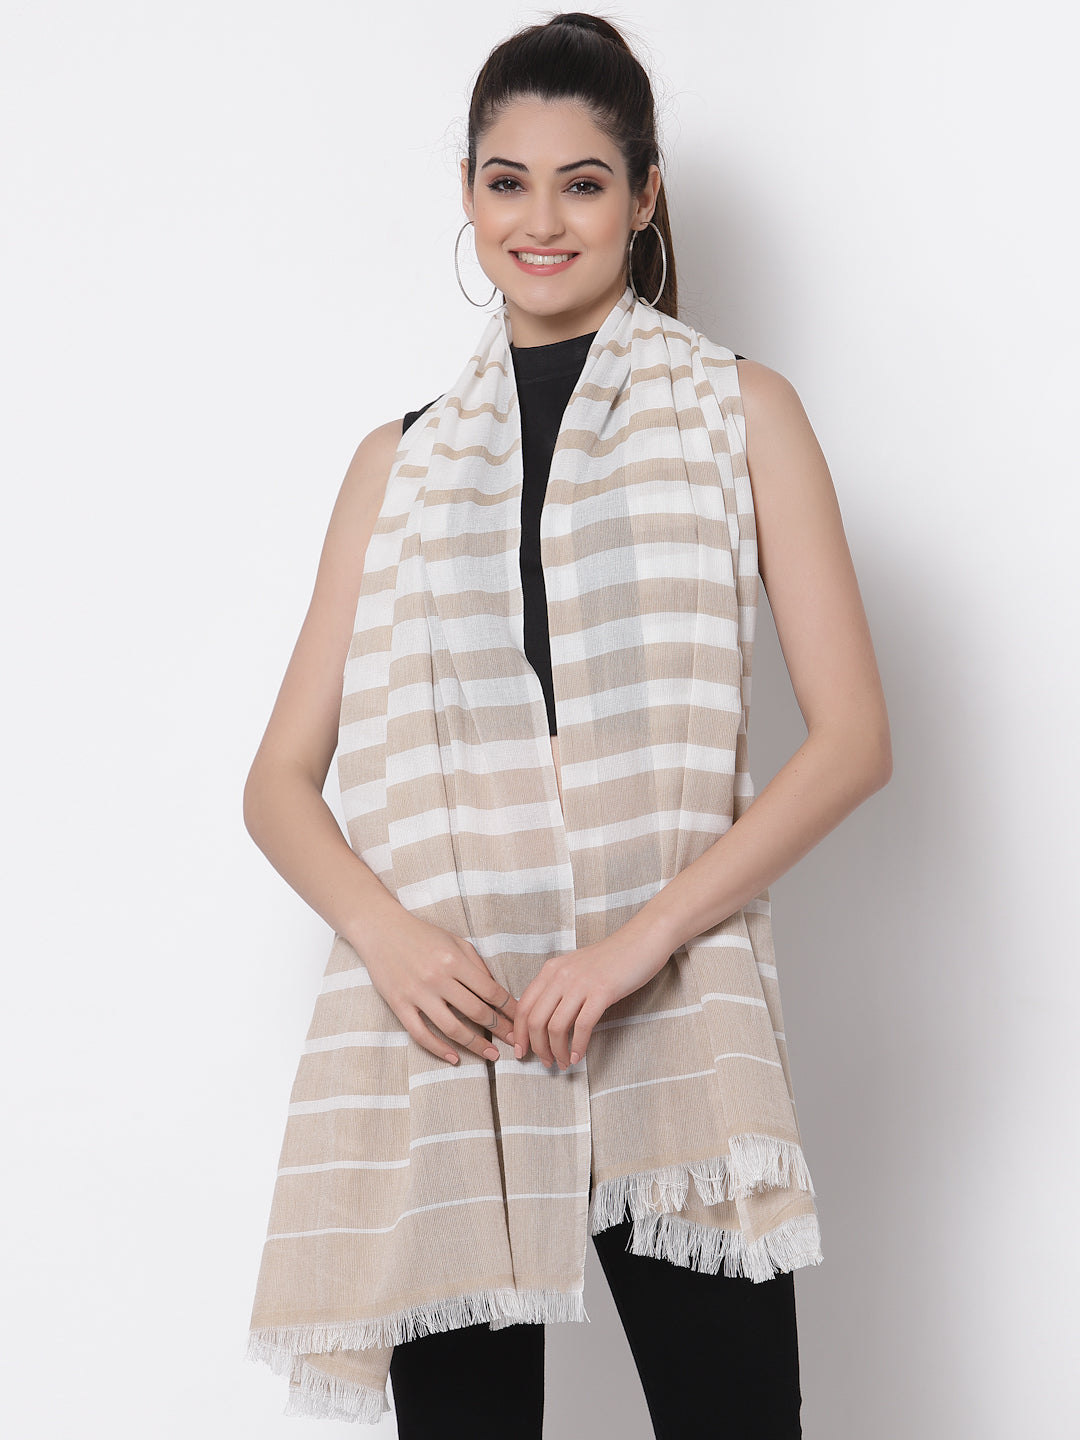 Arrabi Beige Stripes Handwoven Cotton Full Size Stole (185 x 85 cm)